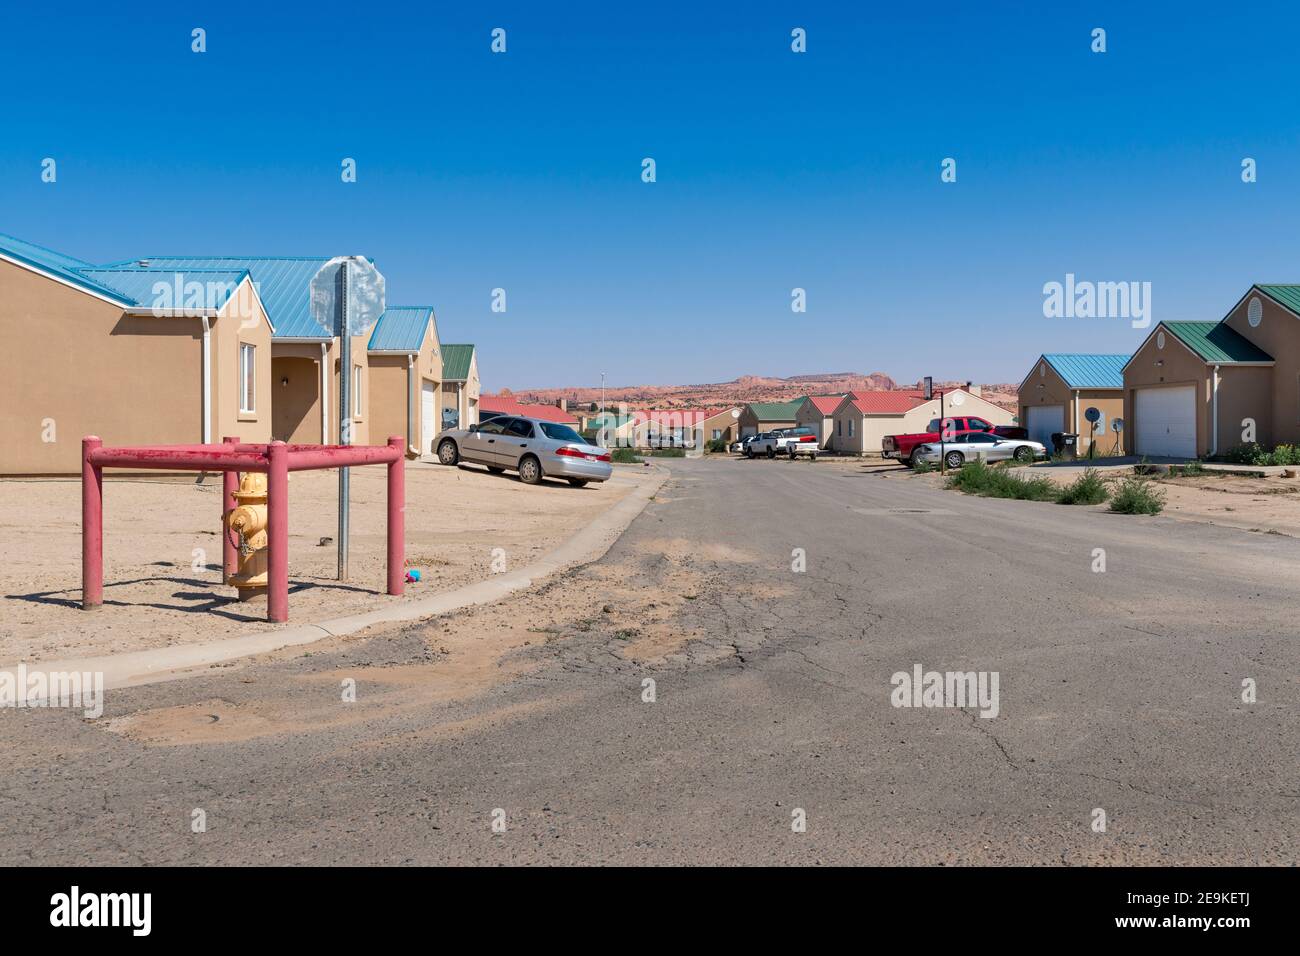 Kayenta, Arizona - 17. Juli 204: Ansicht eines Wohnviertels in der Gemeinde Kayenta, im Navajo County, Staat Arizona, USA. Stockfoto